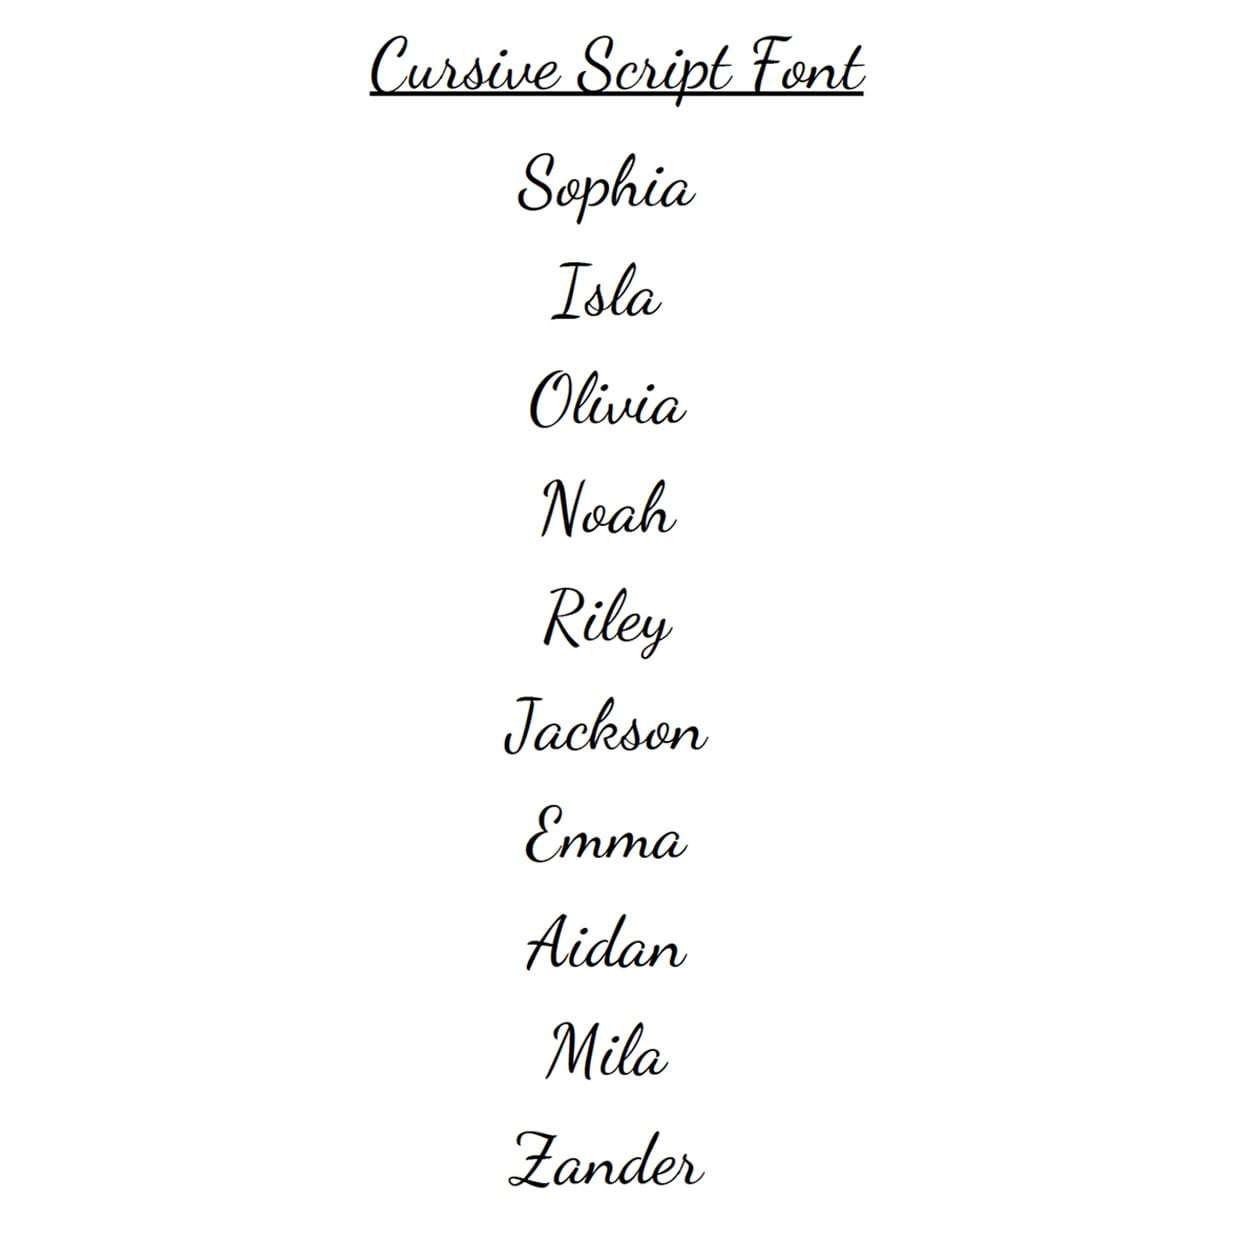 Cursive Script Font Example